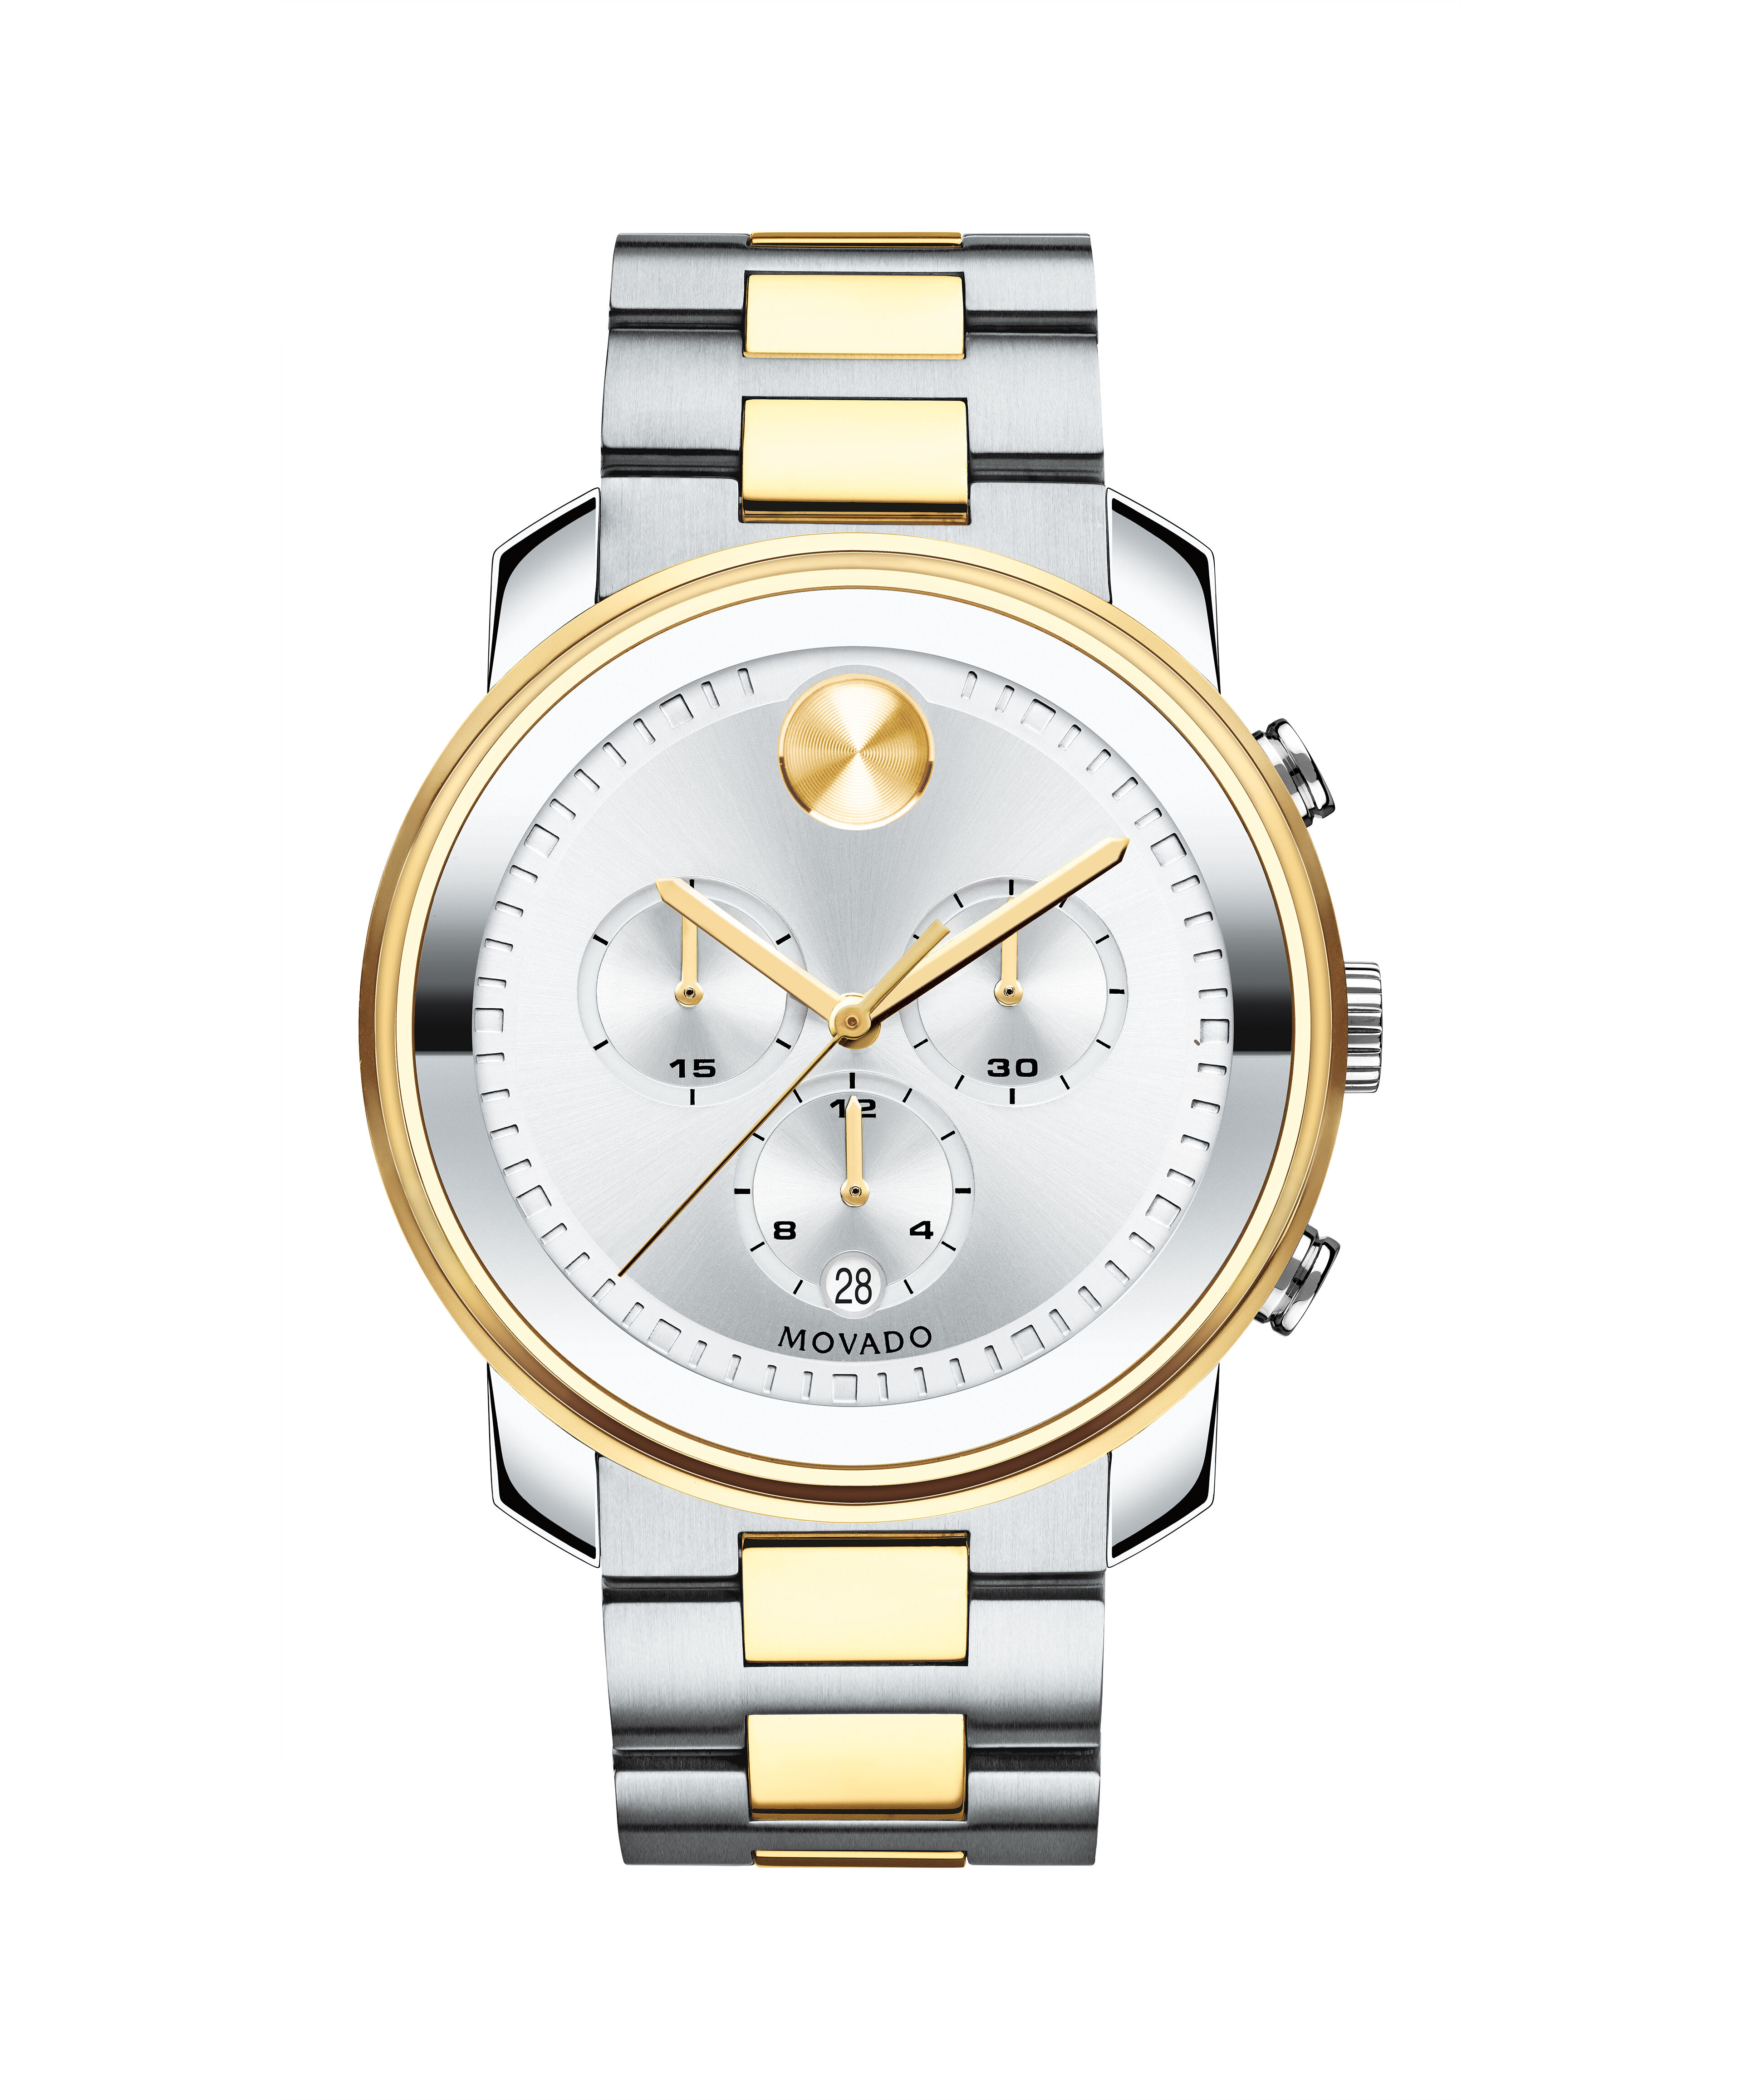 Fake Brand China Made Watches